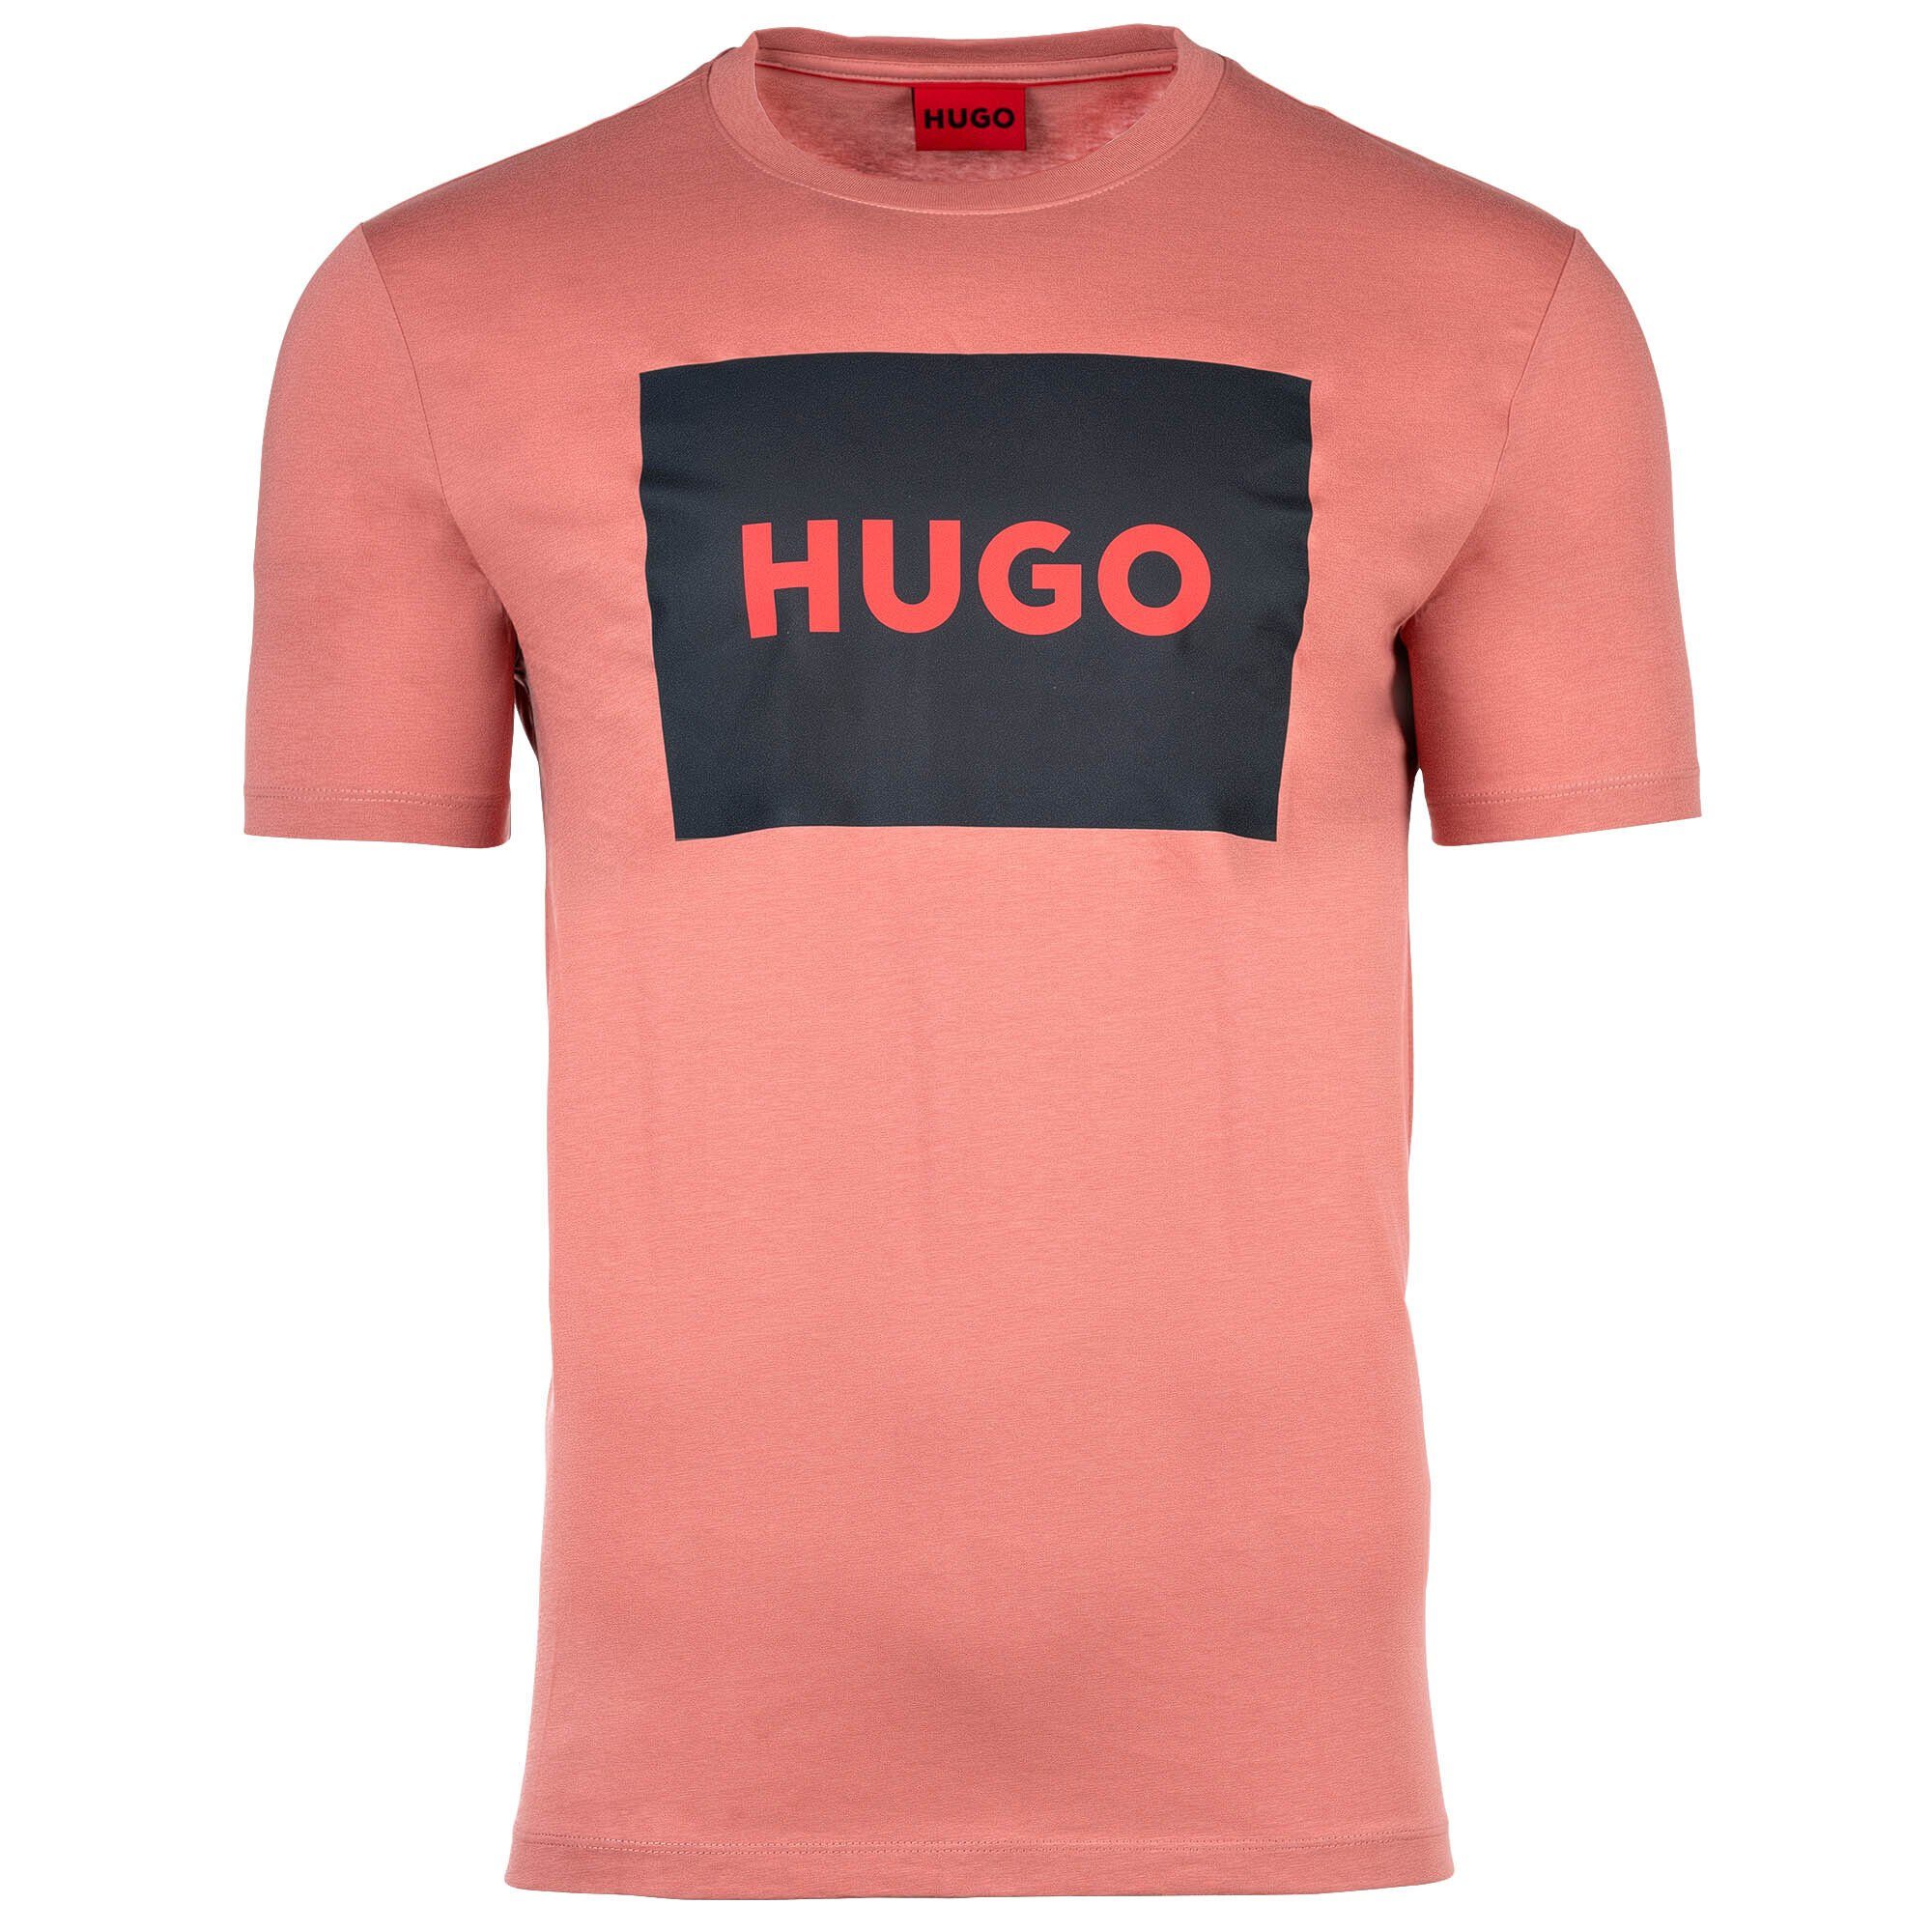 HUGO T-Shirt Herren T-Shirt - Dulive222, Rundhals, Kurzarm Pink